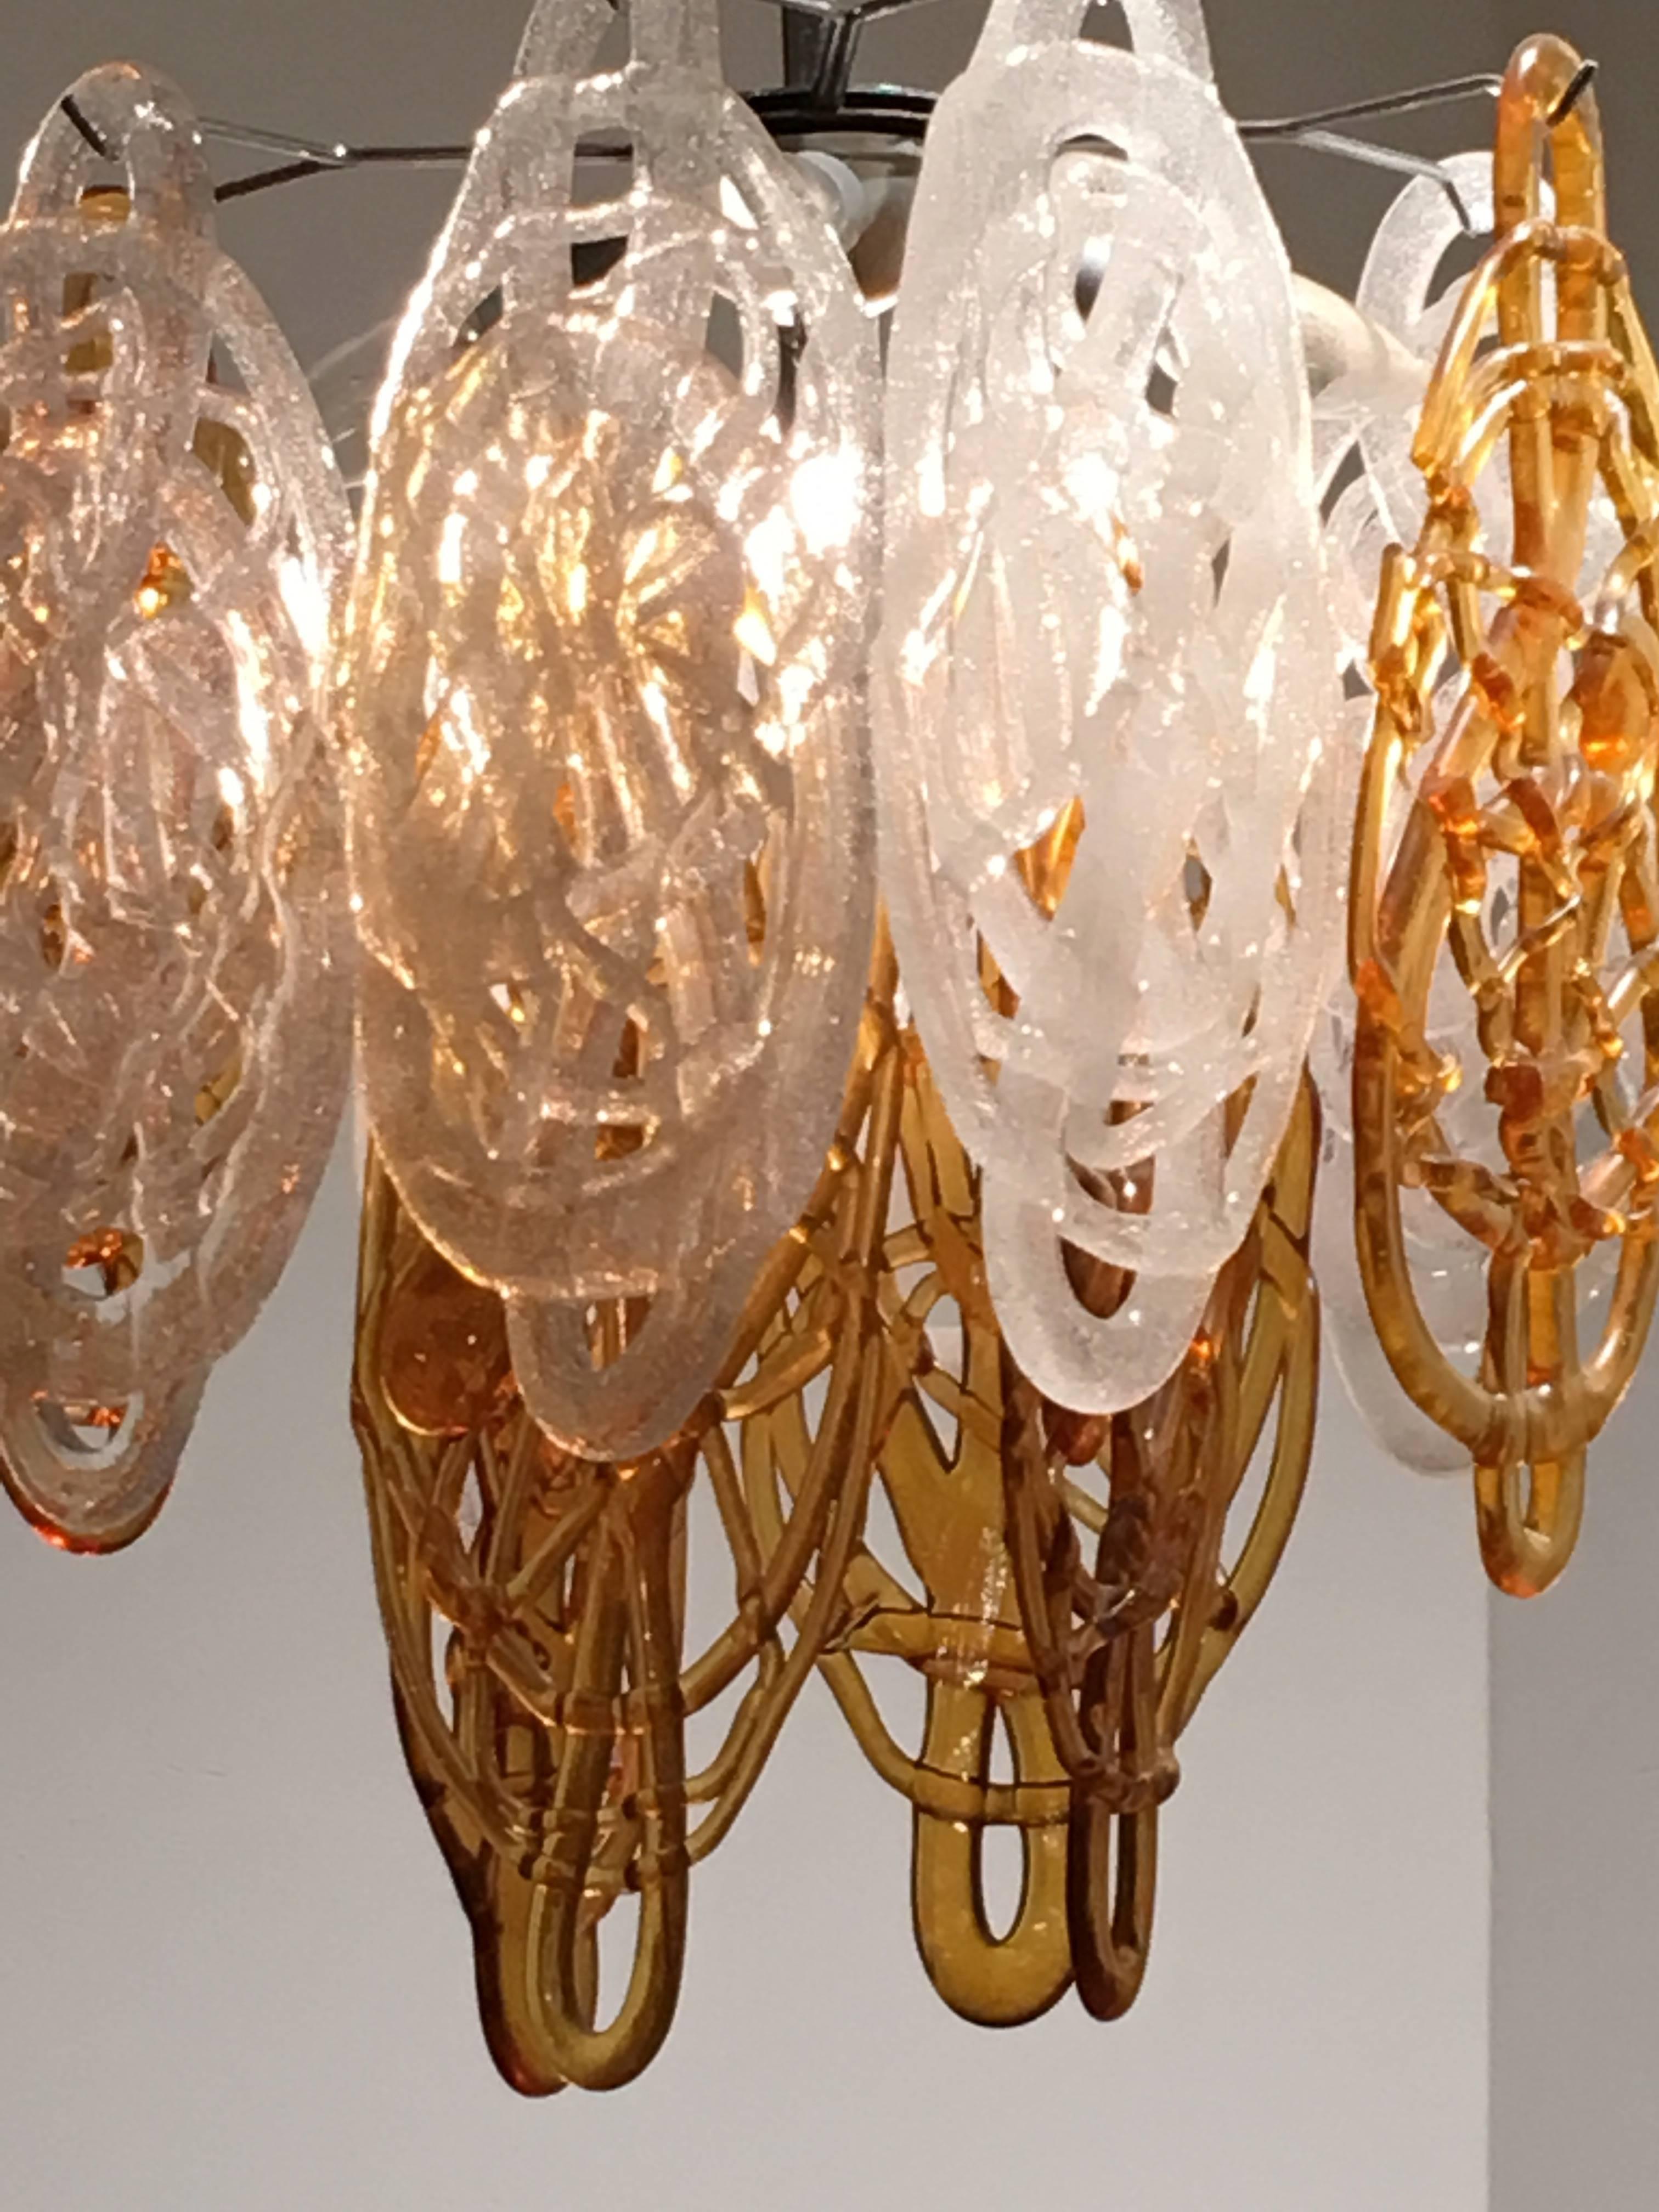 Schöner stimmungsvoller Vistosi-Kronleuchter mit Scheiben im Spaghetti-Stil aus mundgeblasenen Glasfäden, braun und opal.
Metallrahmen verchromt mit 12 Glasscheiben, fünf Glühbirnen.